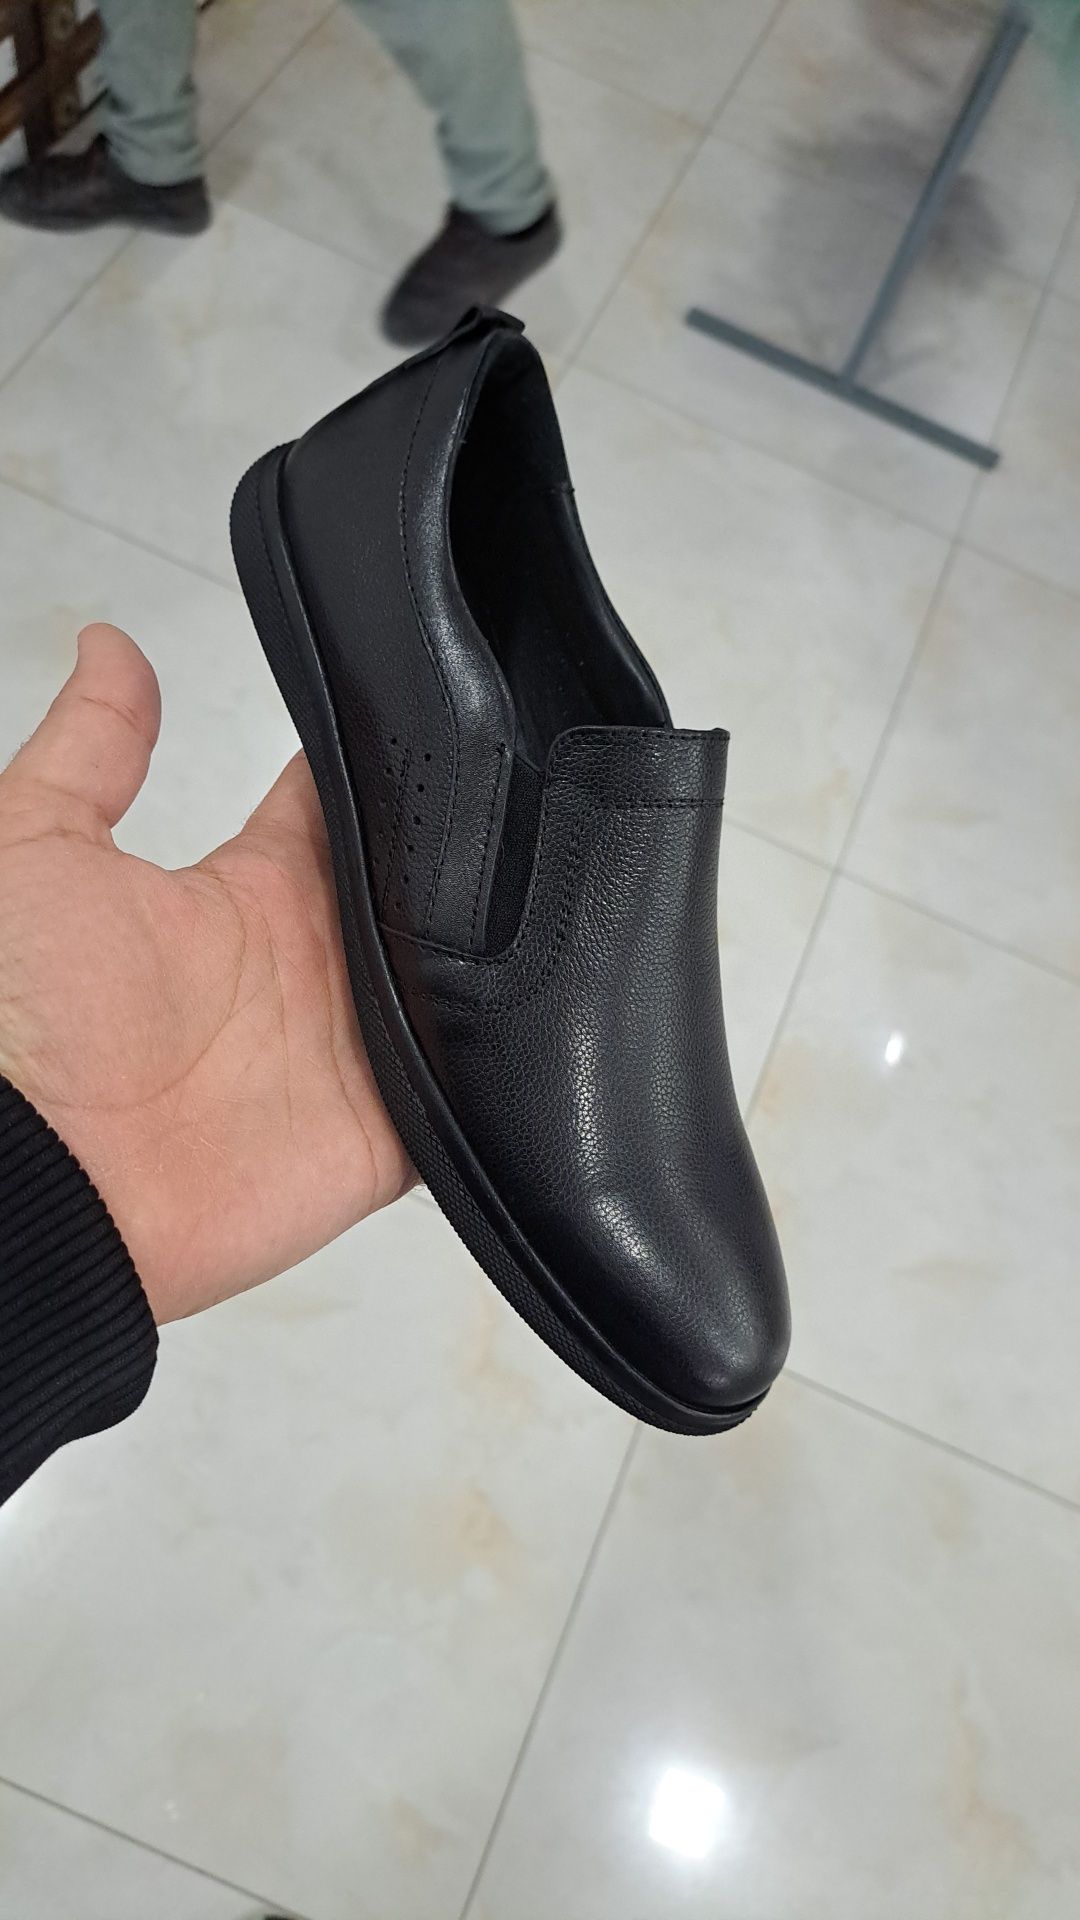 Proud shoes Erkaklar poyabzallari turkiya xom ashyosidan tayyorlangan